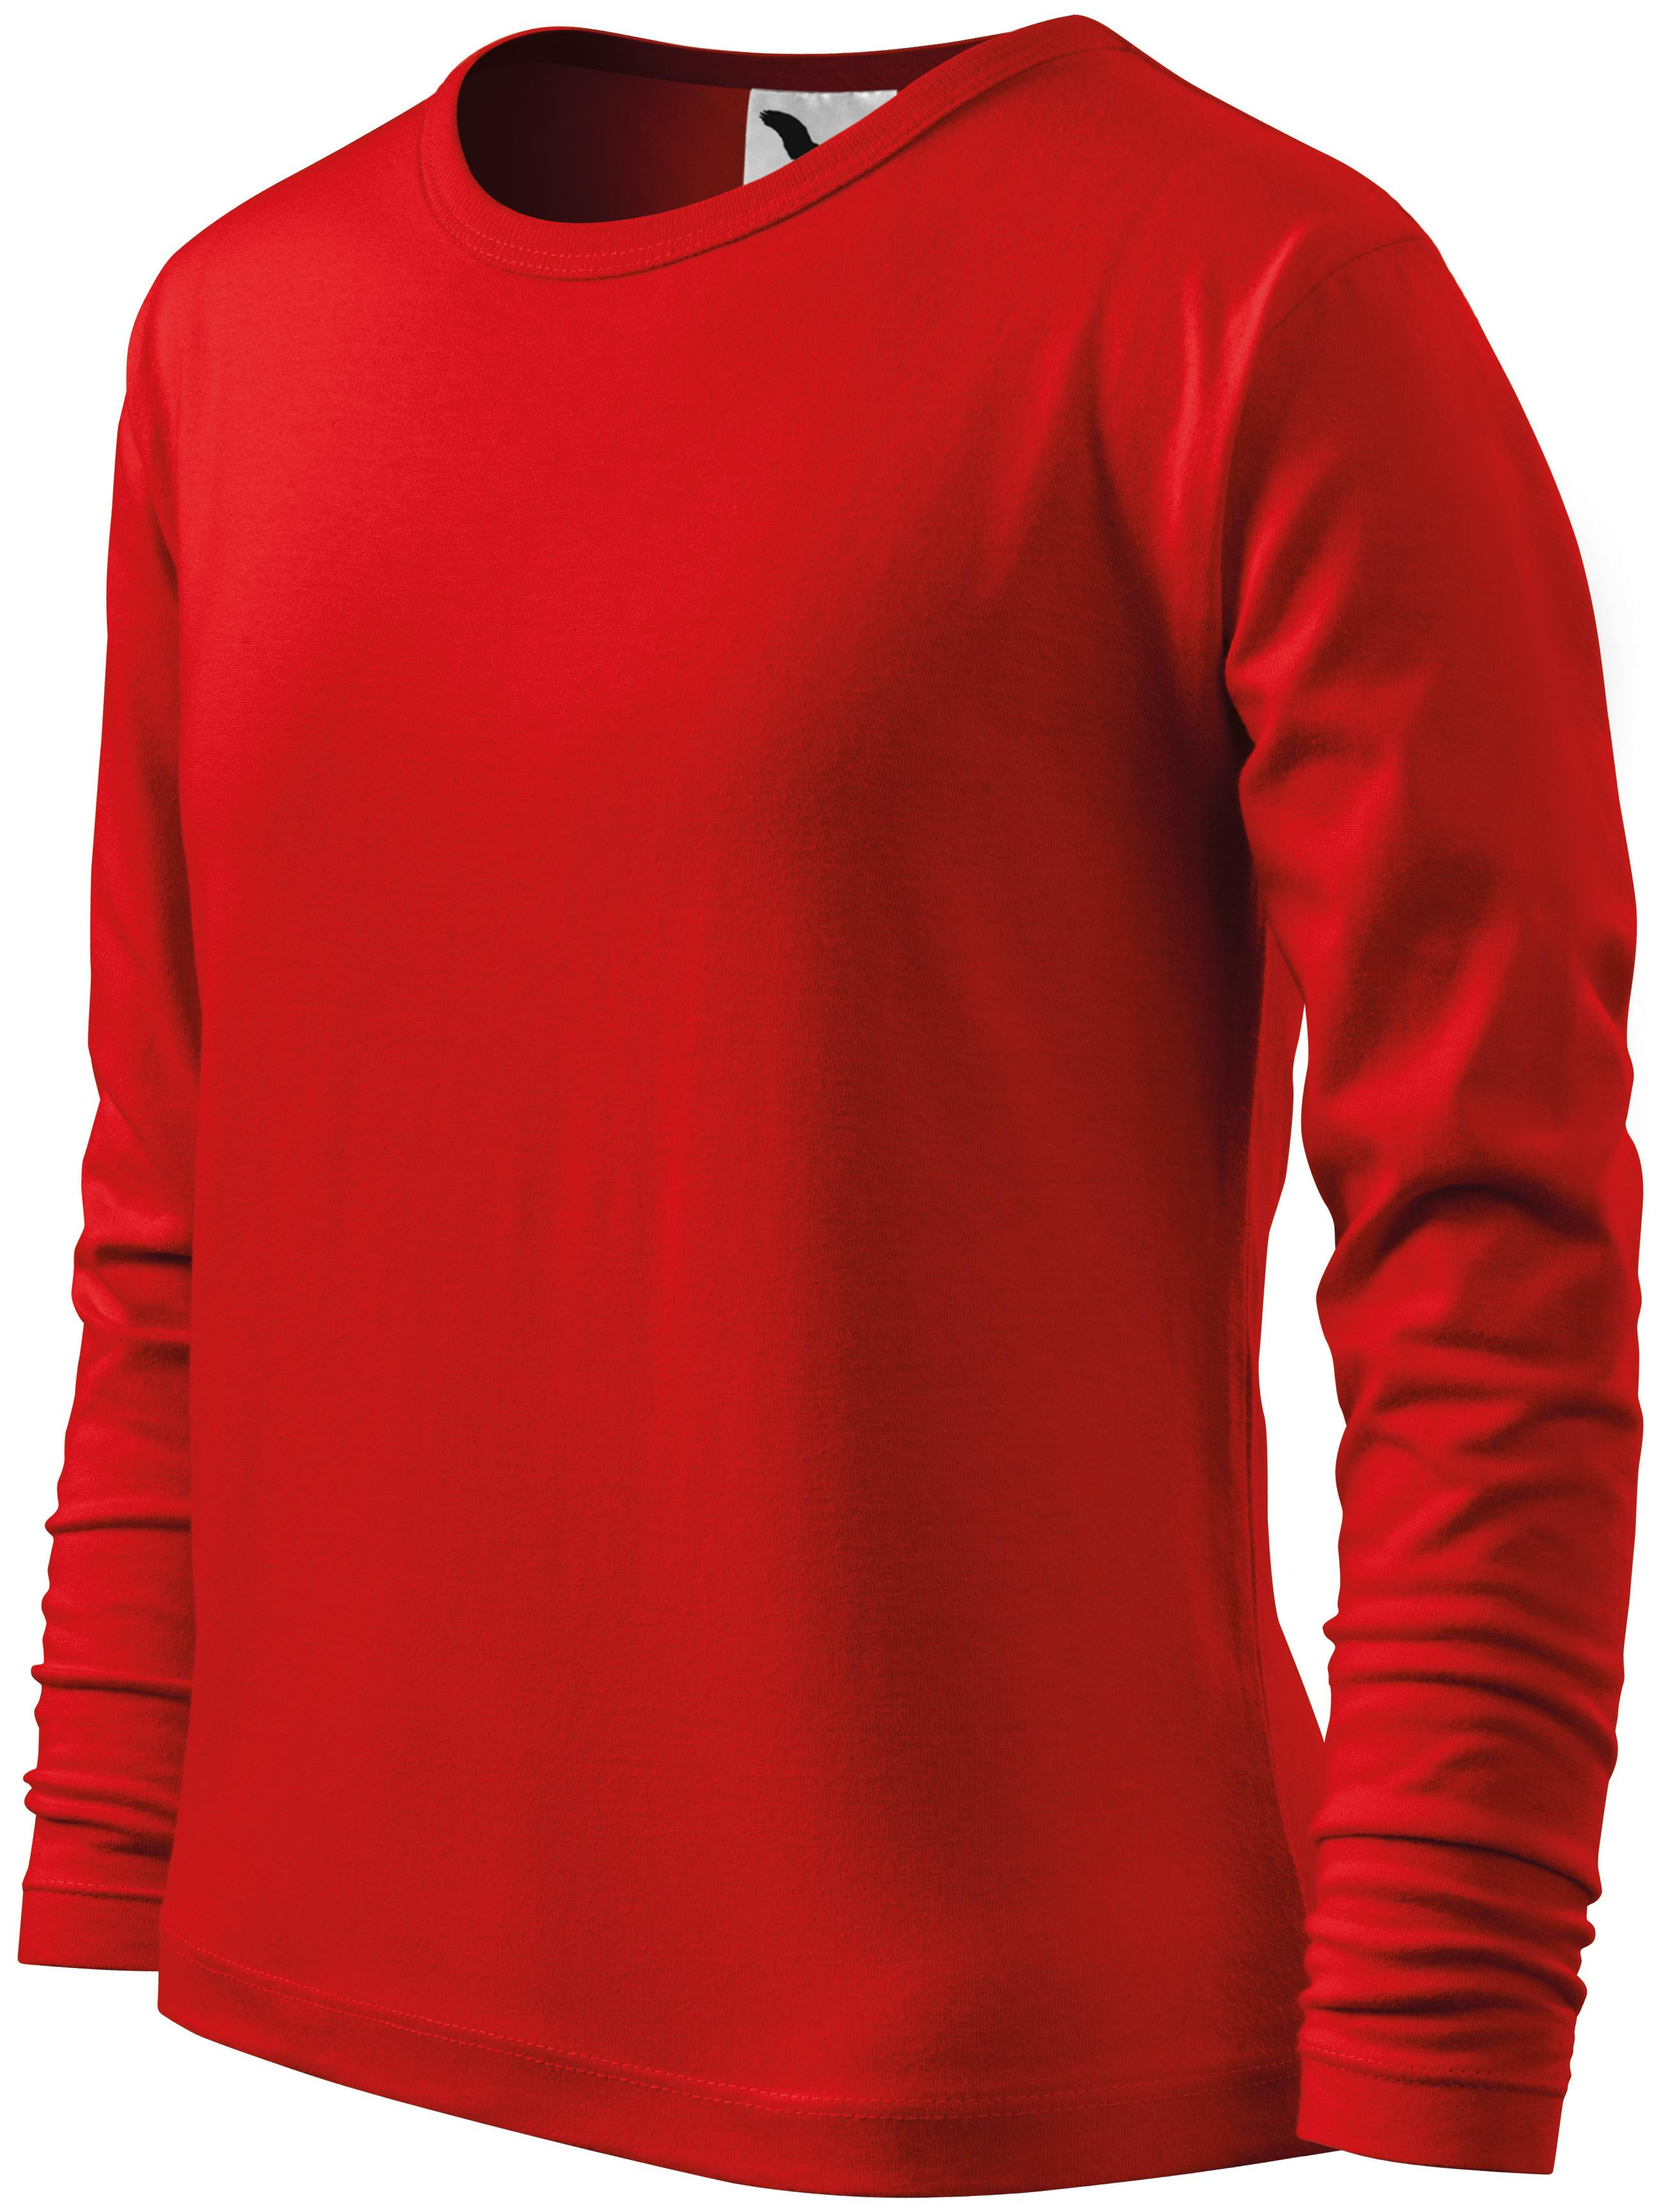 Detské tričko s dlhým rukávom, červená, 110cm / 4roky